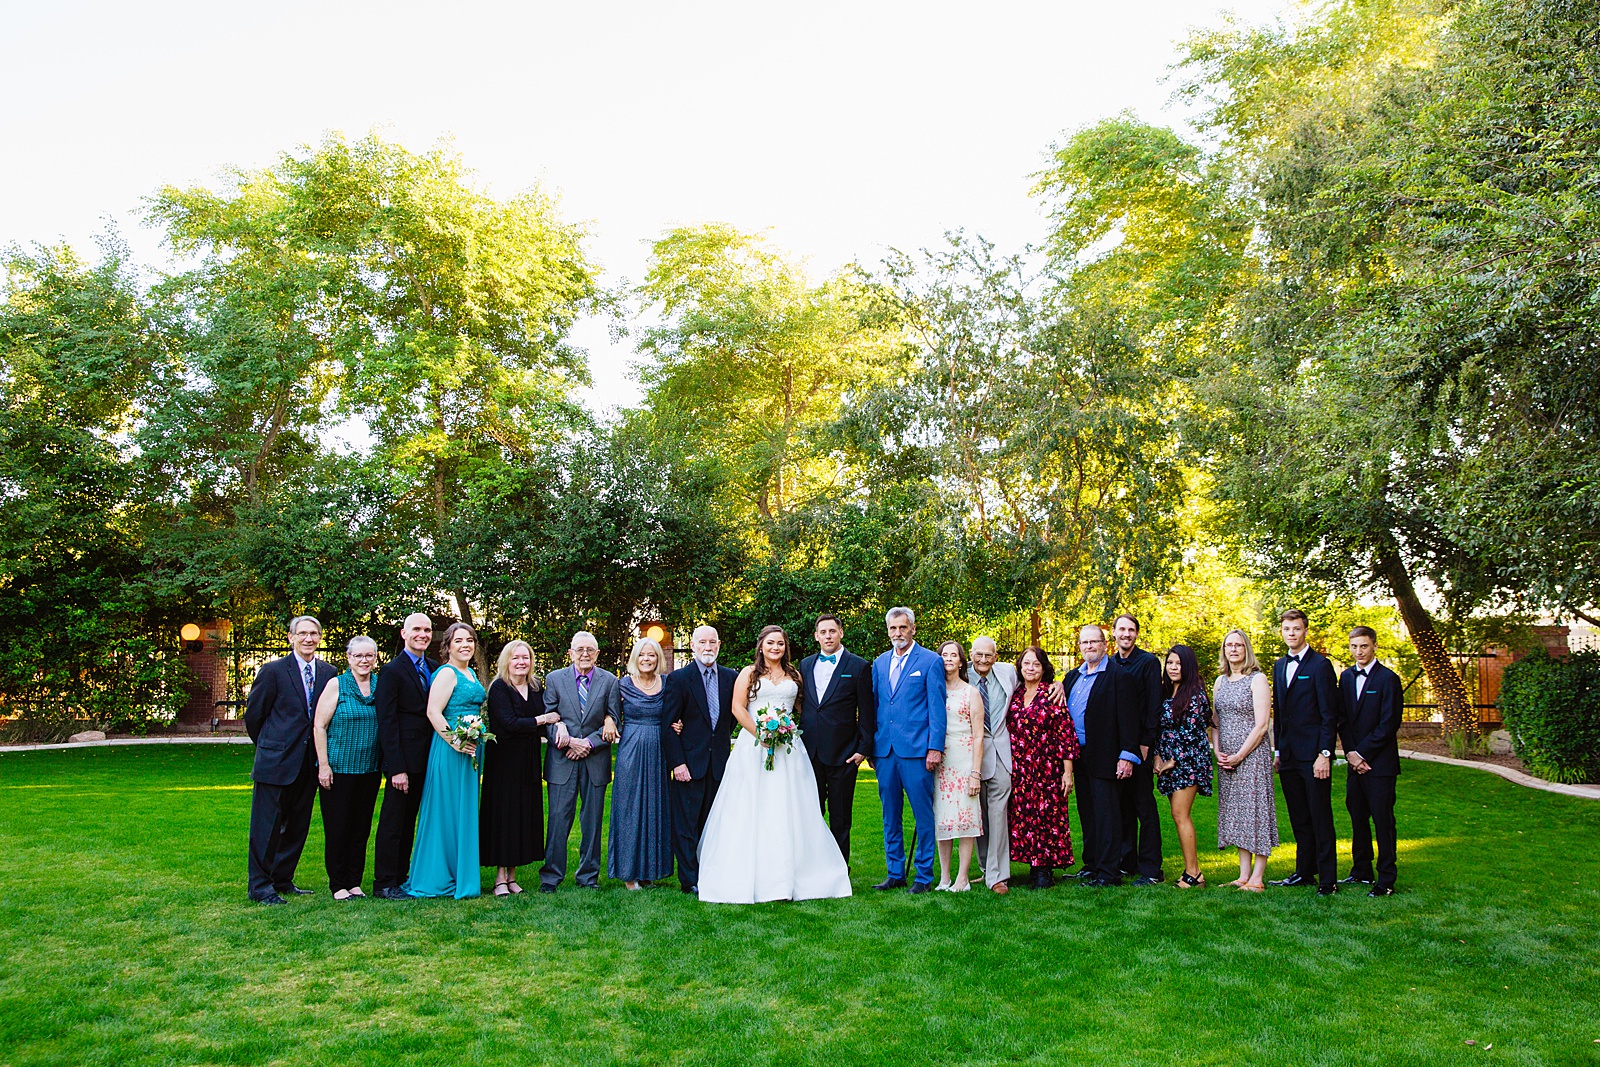 Family portraits at a Stonebridge Manor wedding by Arizona wedding photographer PMA Photography.